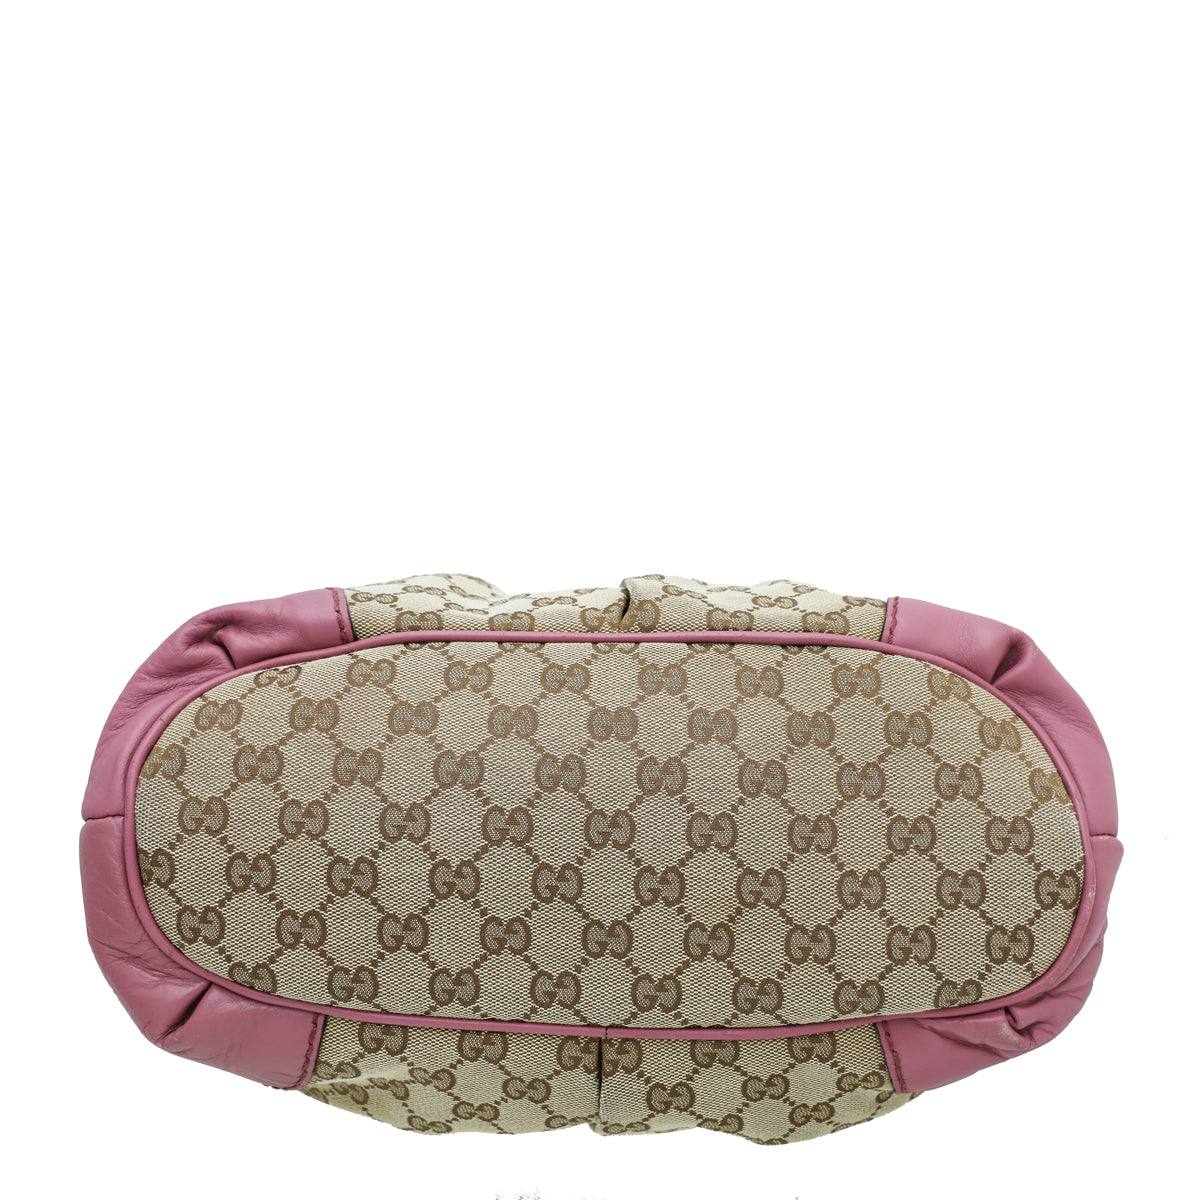 Gucci Bicolor Monogram Sukey Top Handle Bag